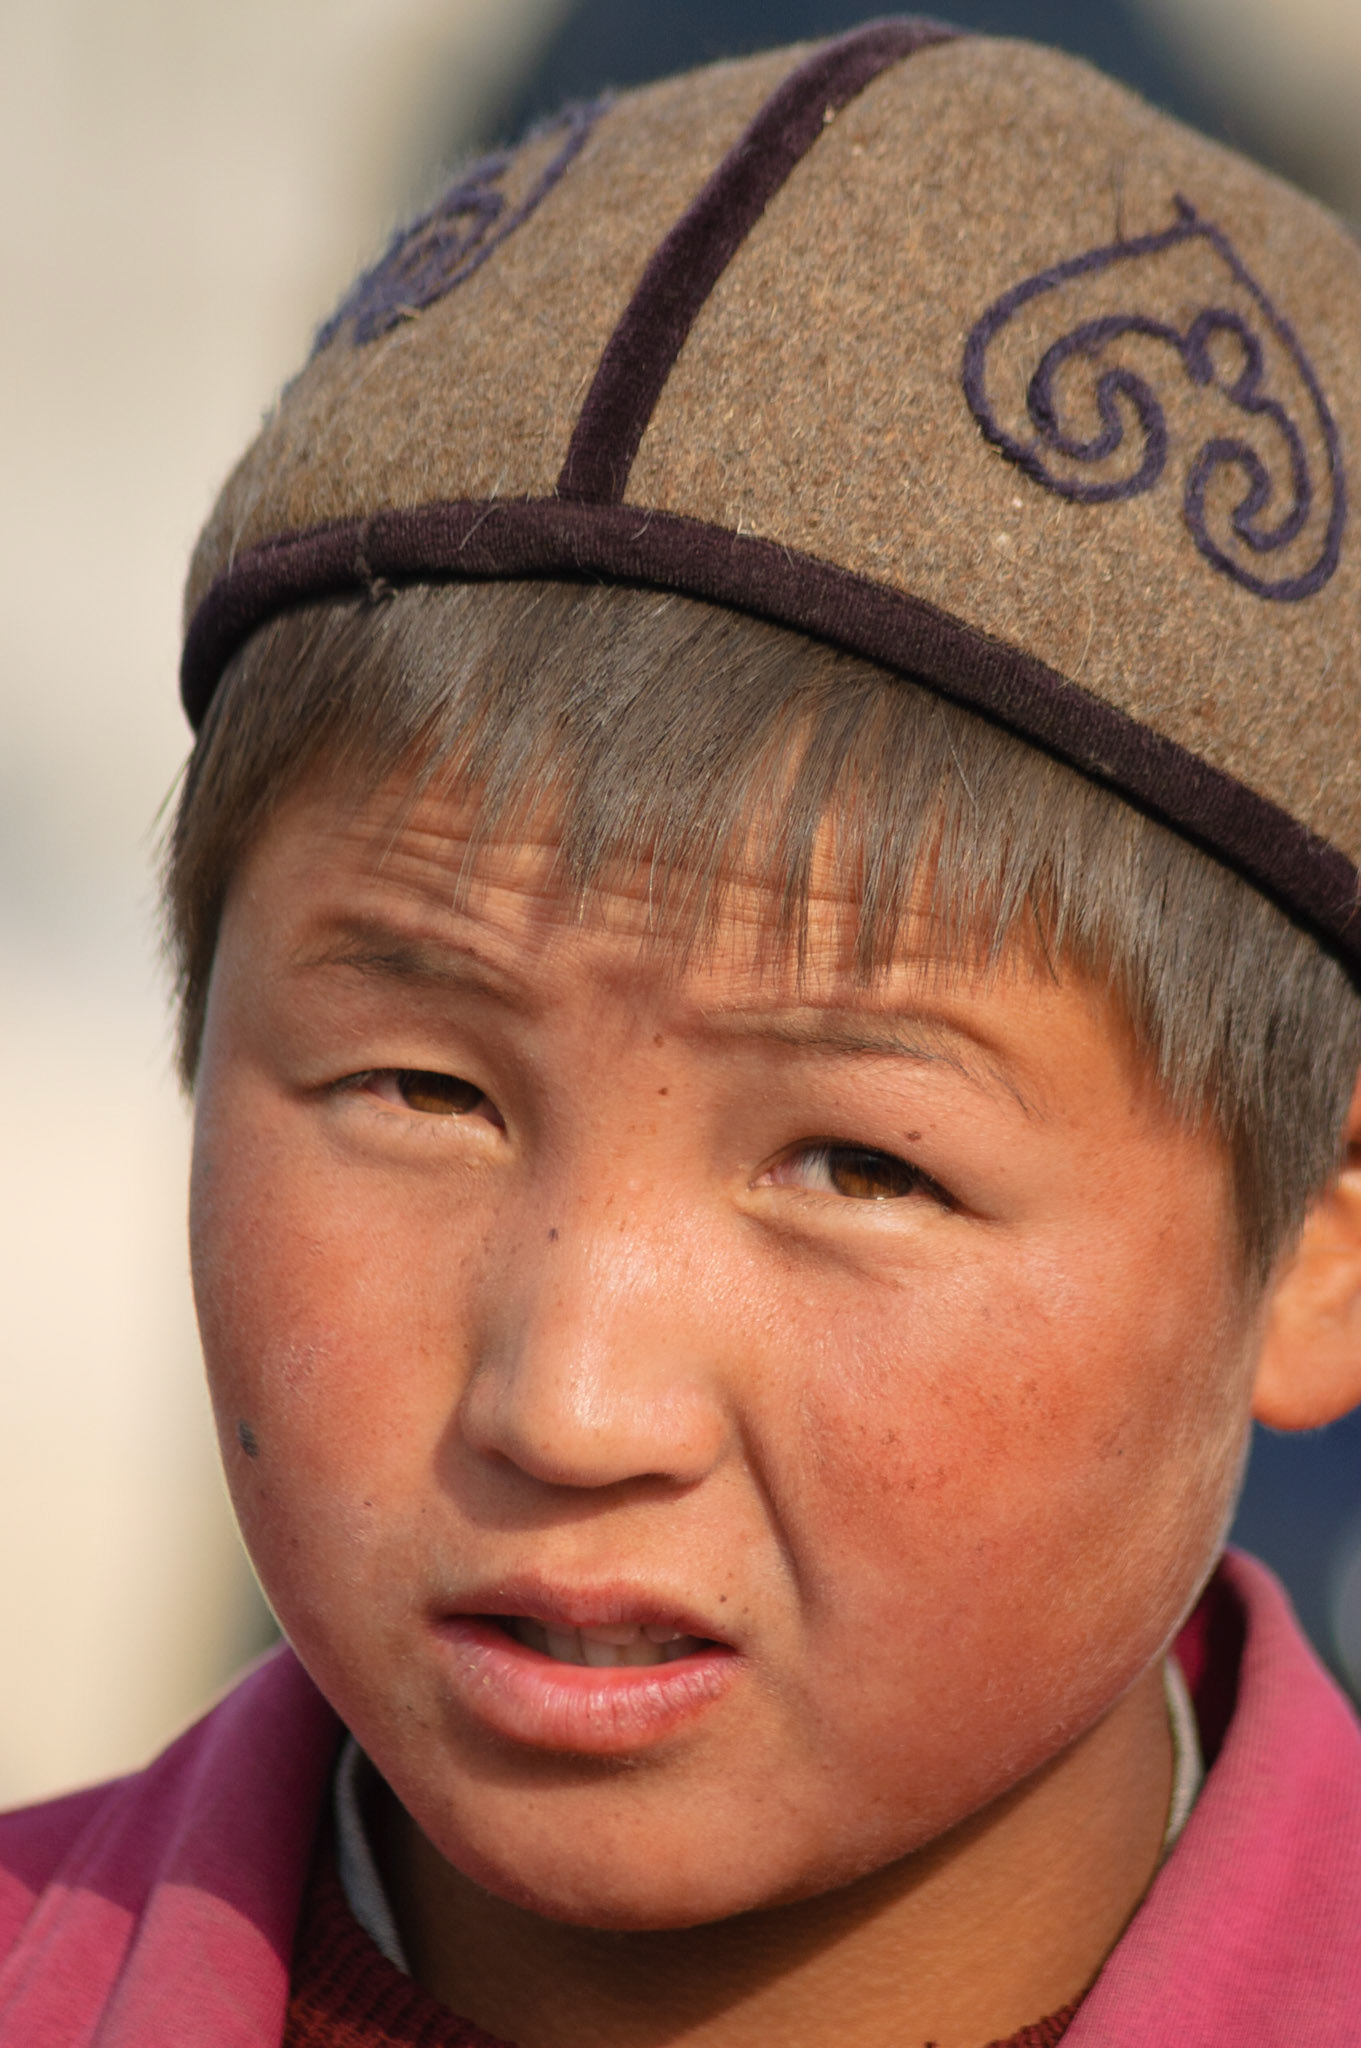 Национальность киргиз. Киргиз ду́ппи. Казахи и киргизы. Киргиз Карбен. Монголы с голубыми глазами.